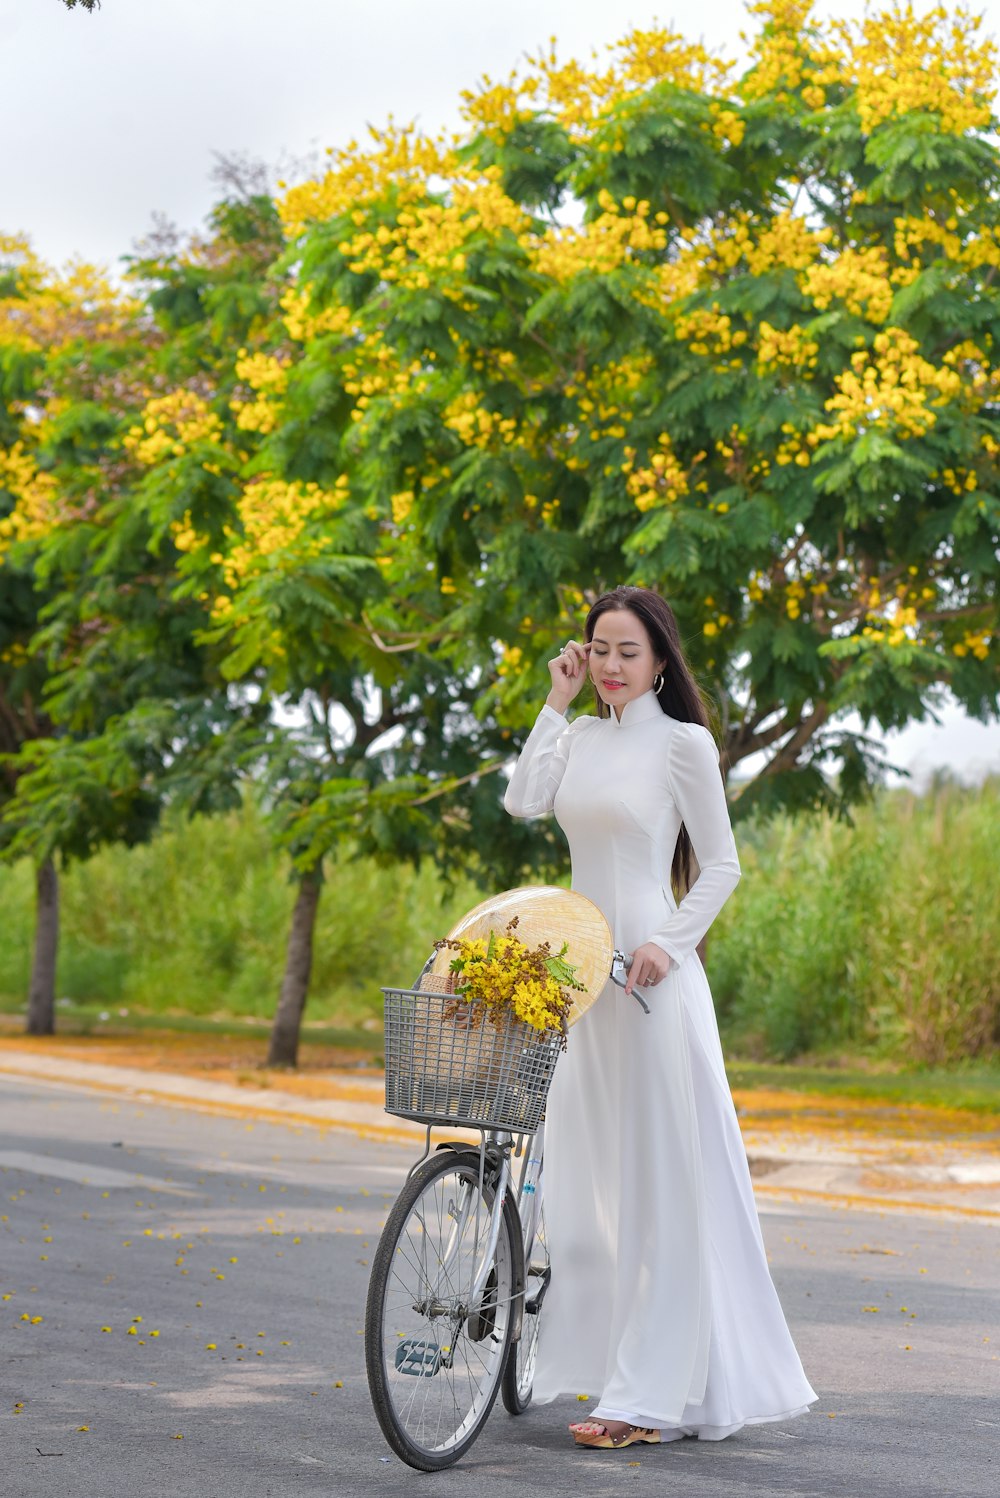 昼間 道路に立って花束を持っている白い長袖のドレスを着た女性の写真 Unsplashで見つける緑の無料写真